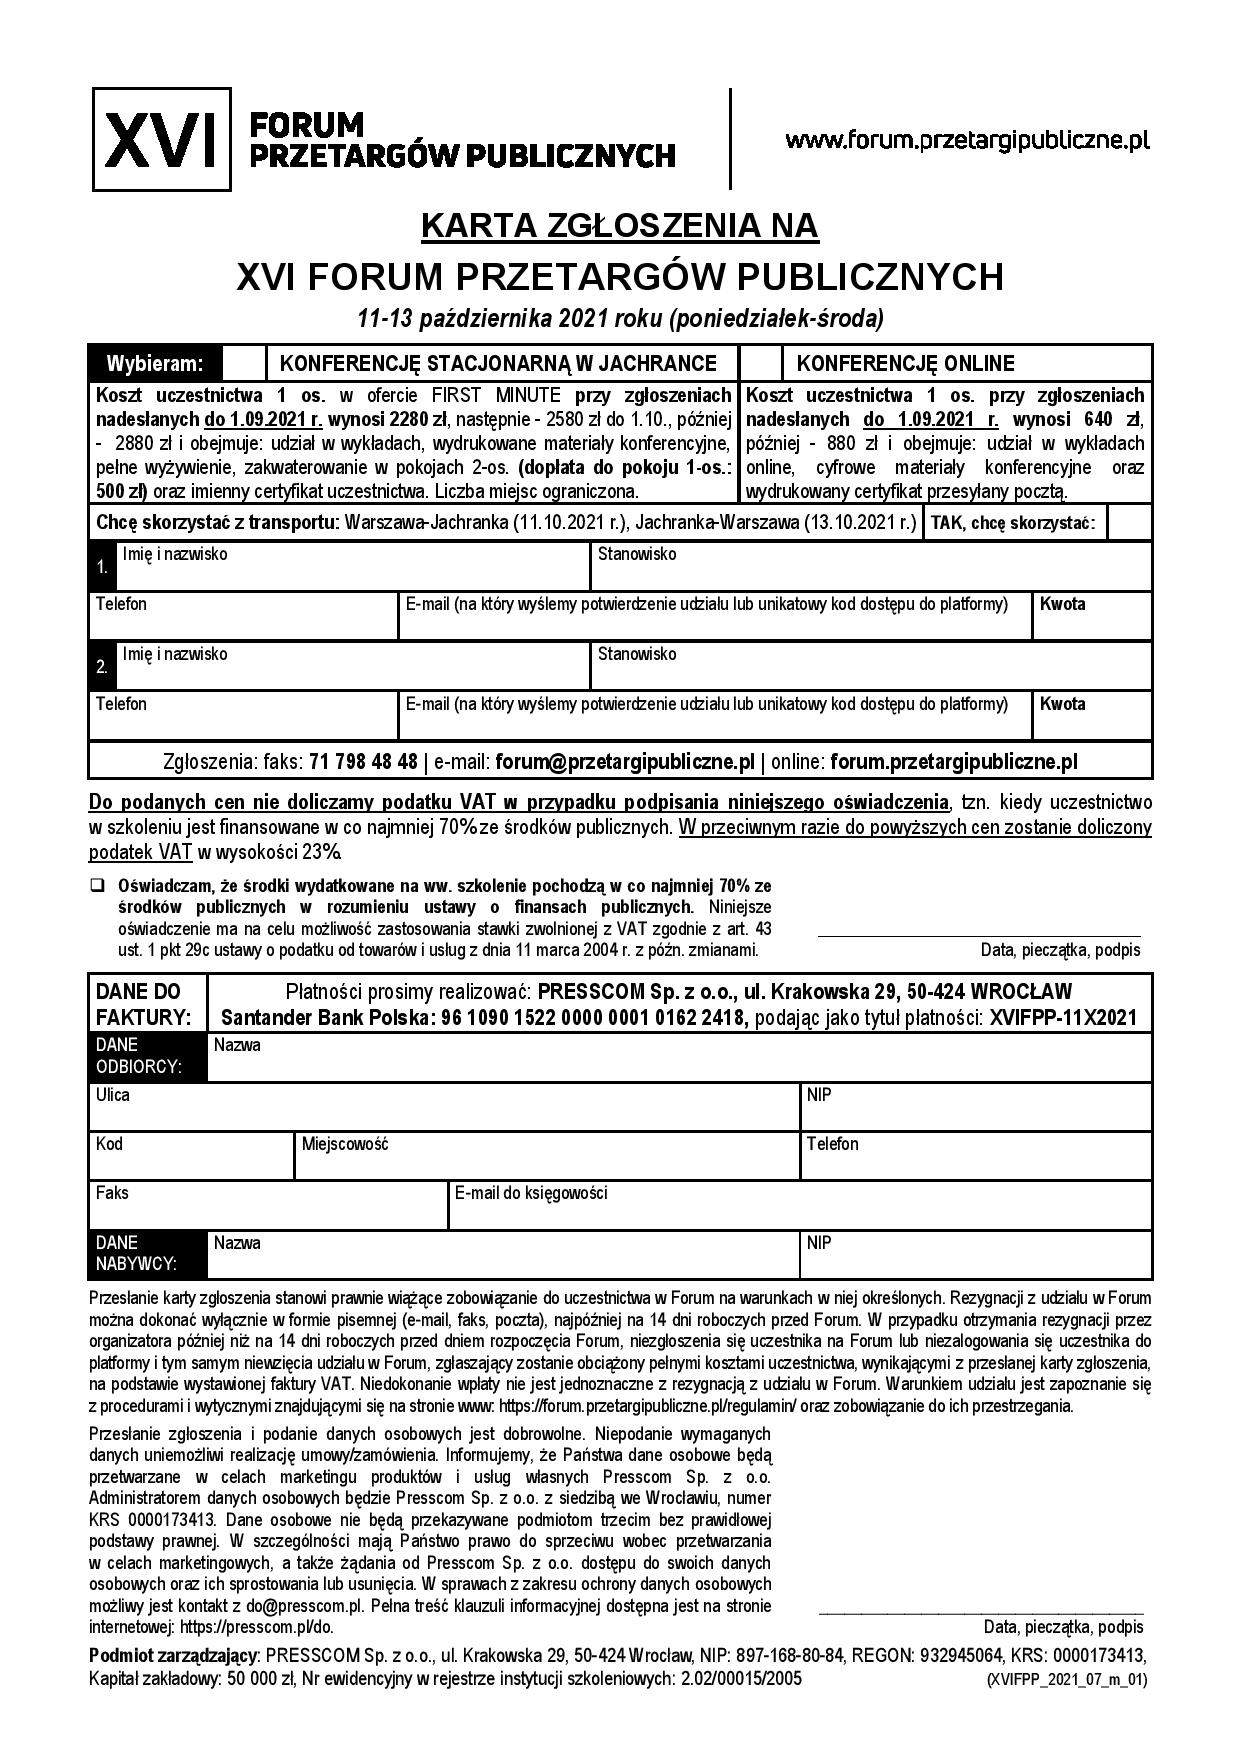 zaproszenie_2021-10-11_Jachranka_XVIFPP_1-page-004.jpg